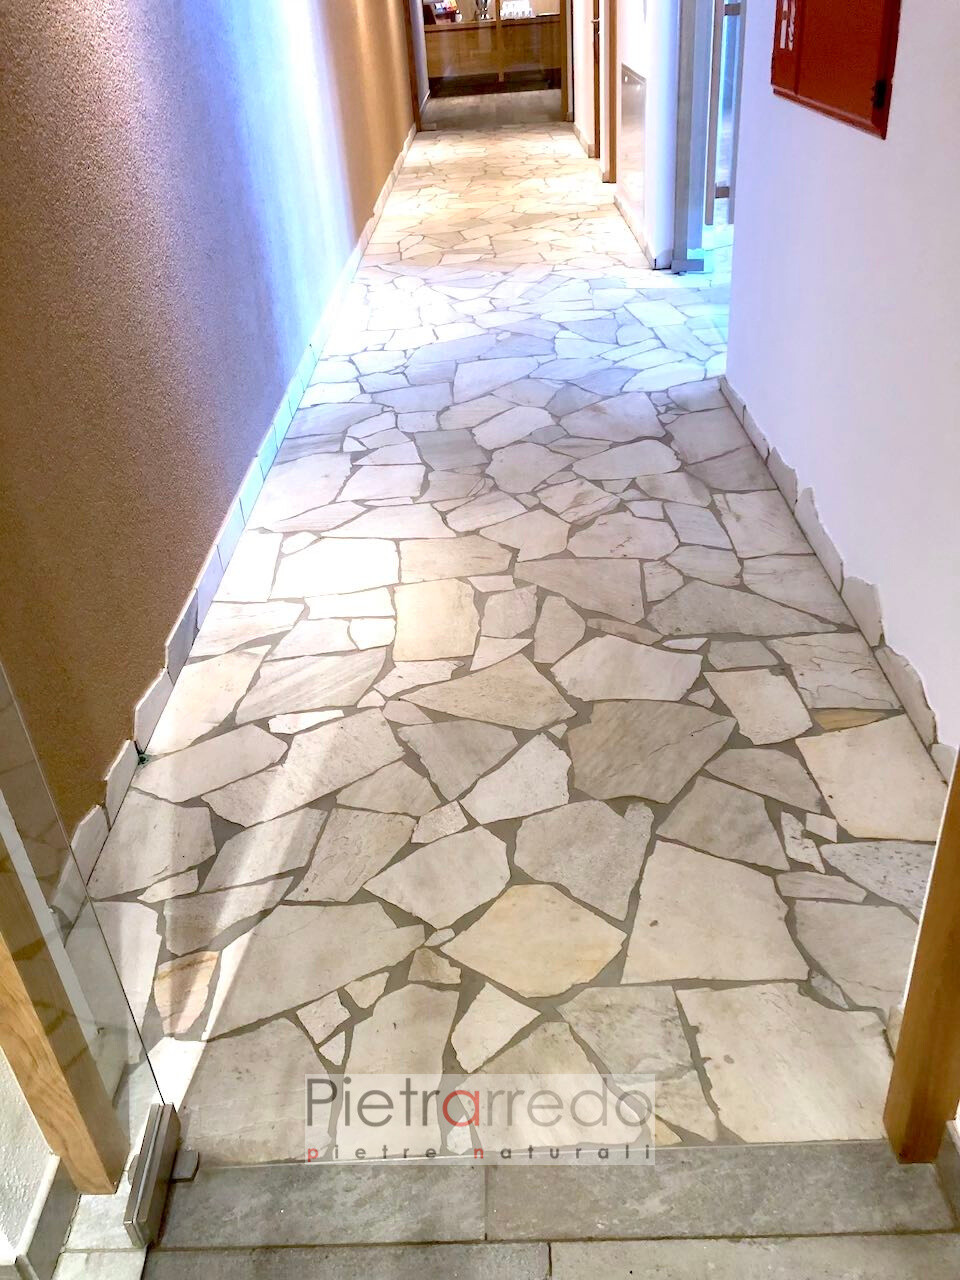 floor pavimento in pietra quarzite brasiliana bianca mosaico pietrarredo flagstone white paving prezzo